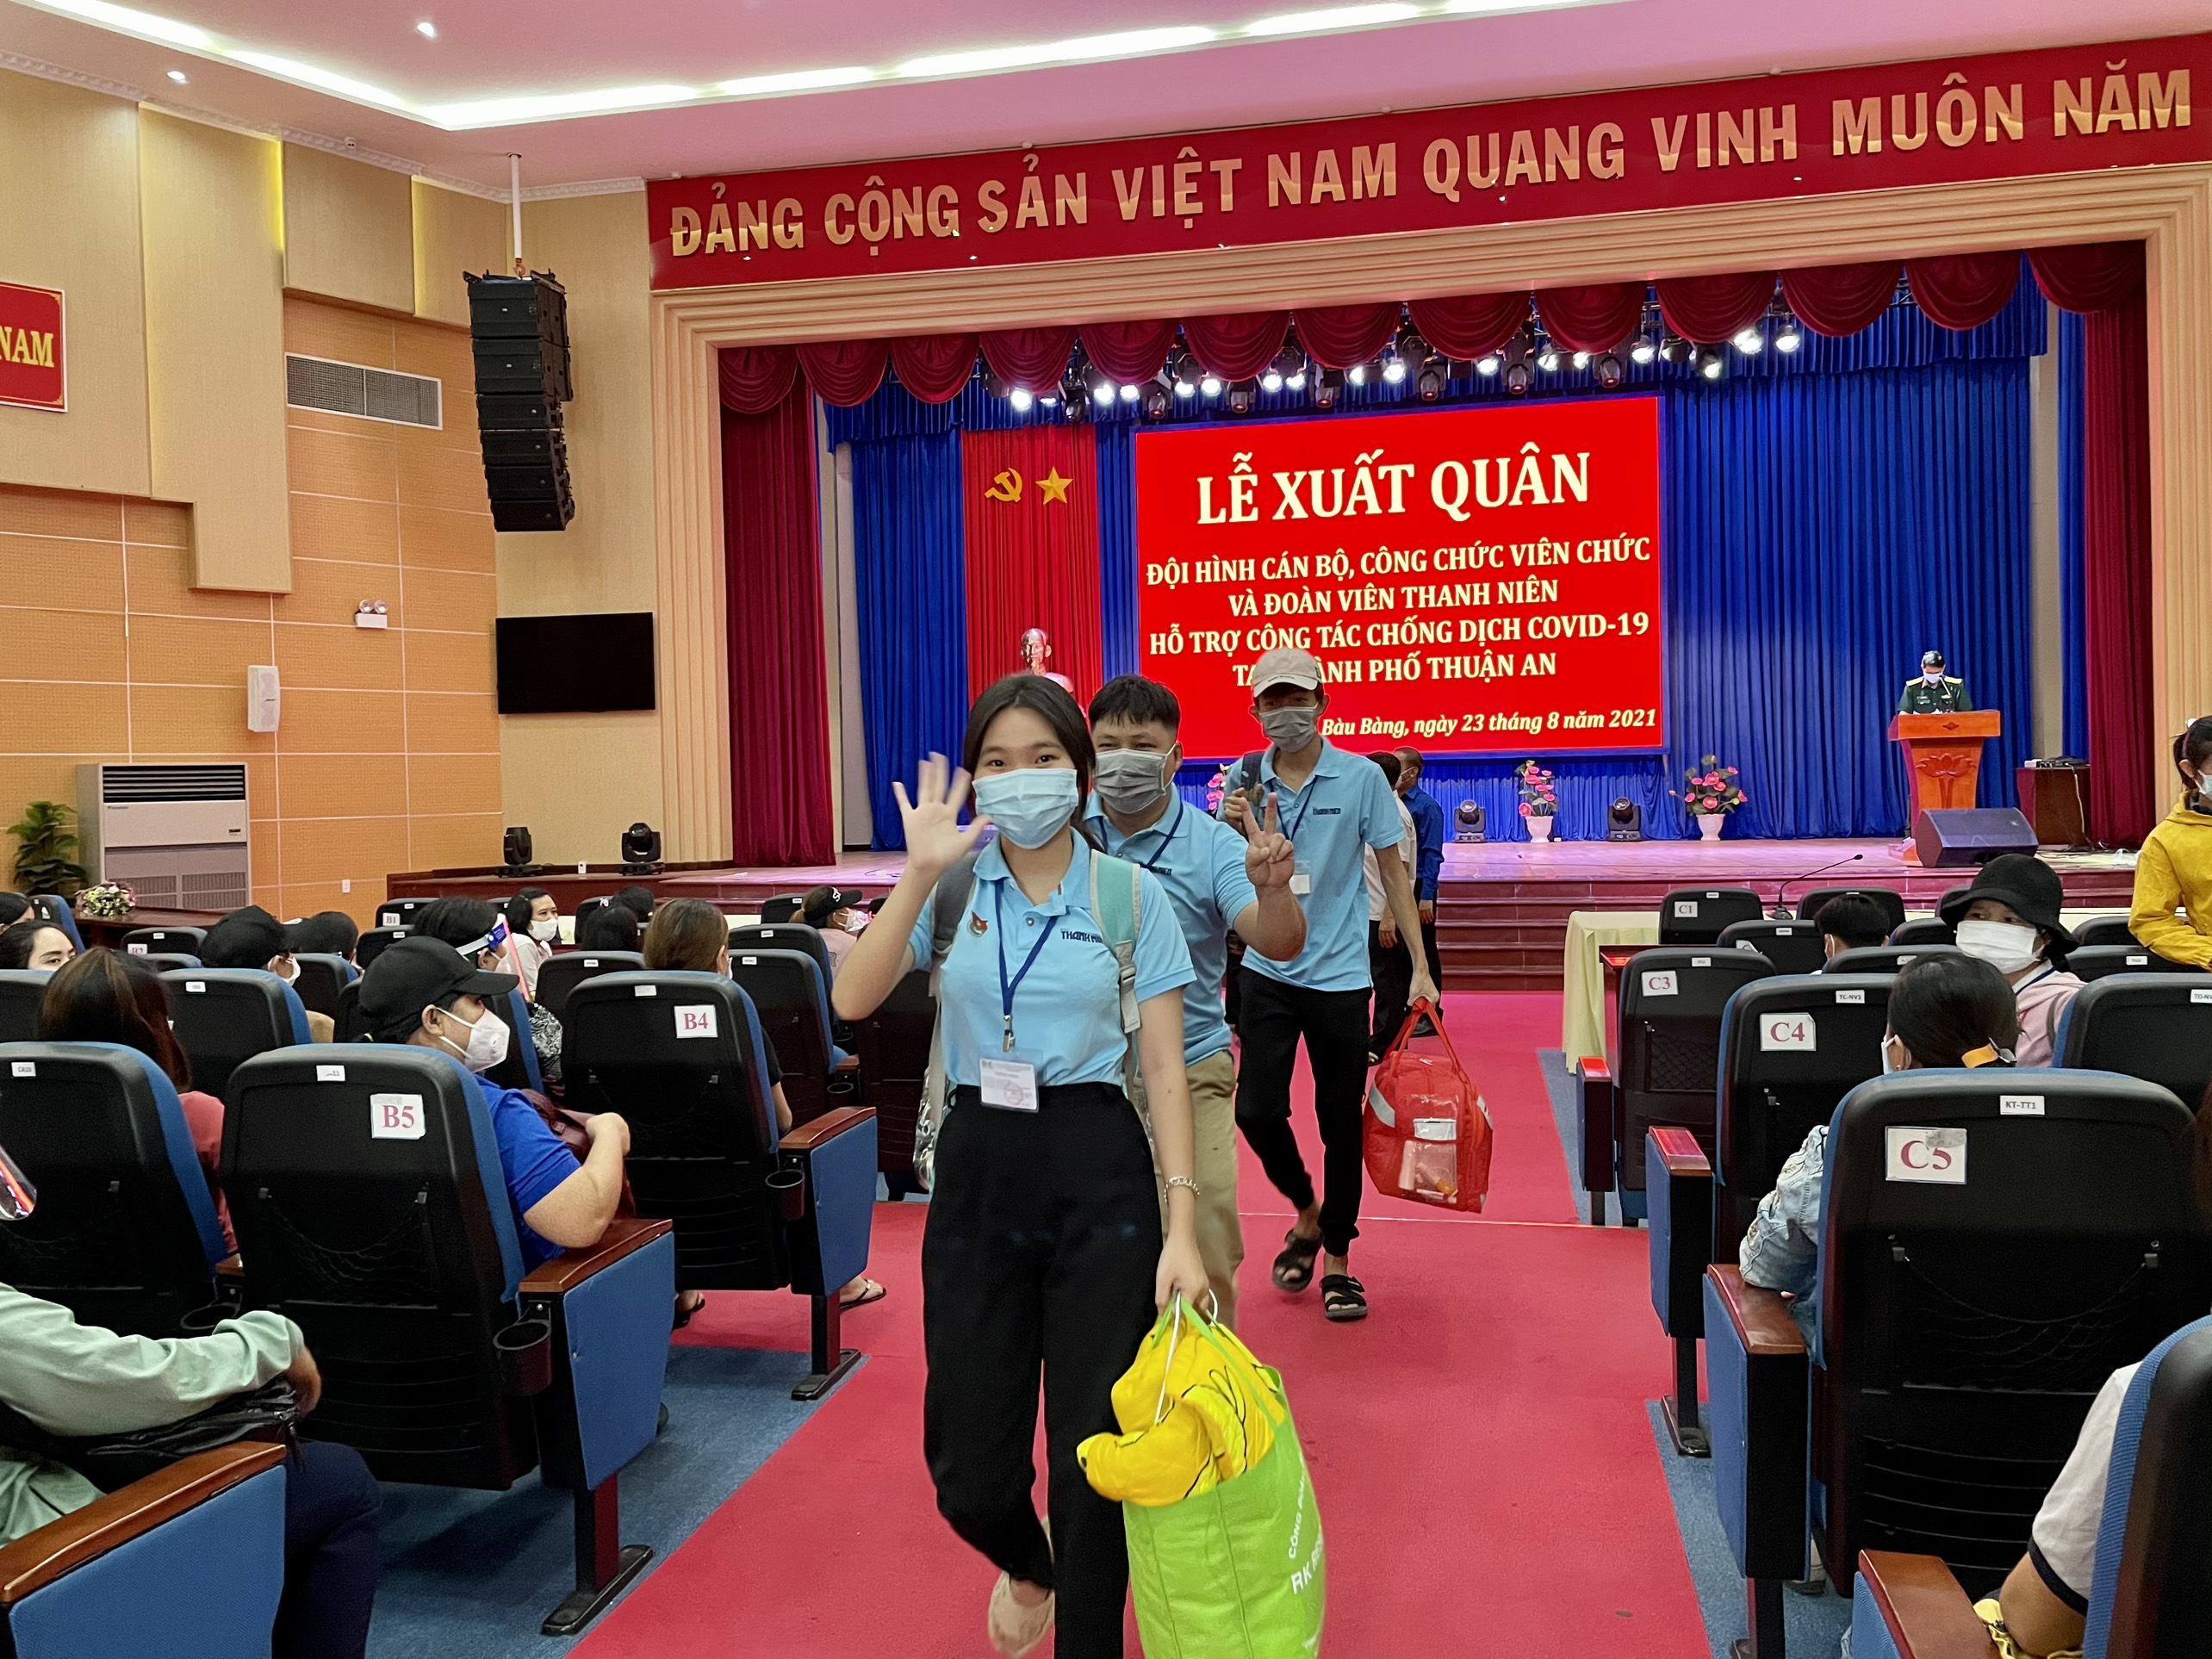 Huyện Bàu Bàng xuất quân hỗ trợ công tác chống dịch COVID-19 tại thành phố Thuận An